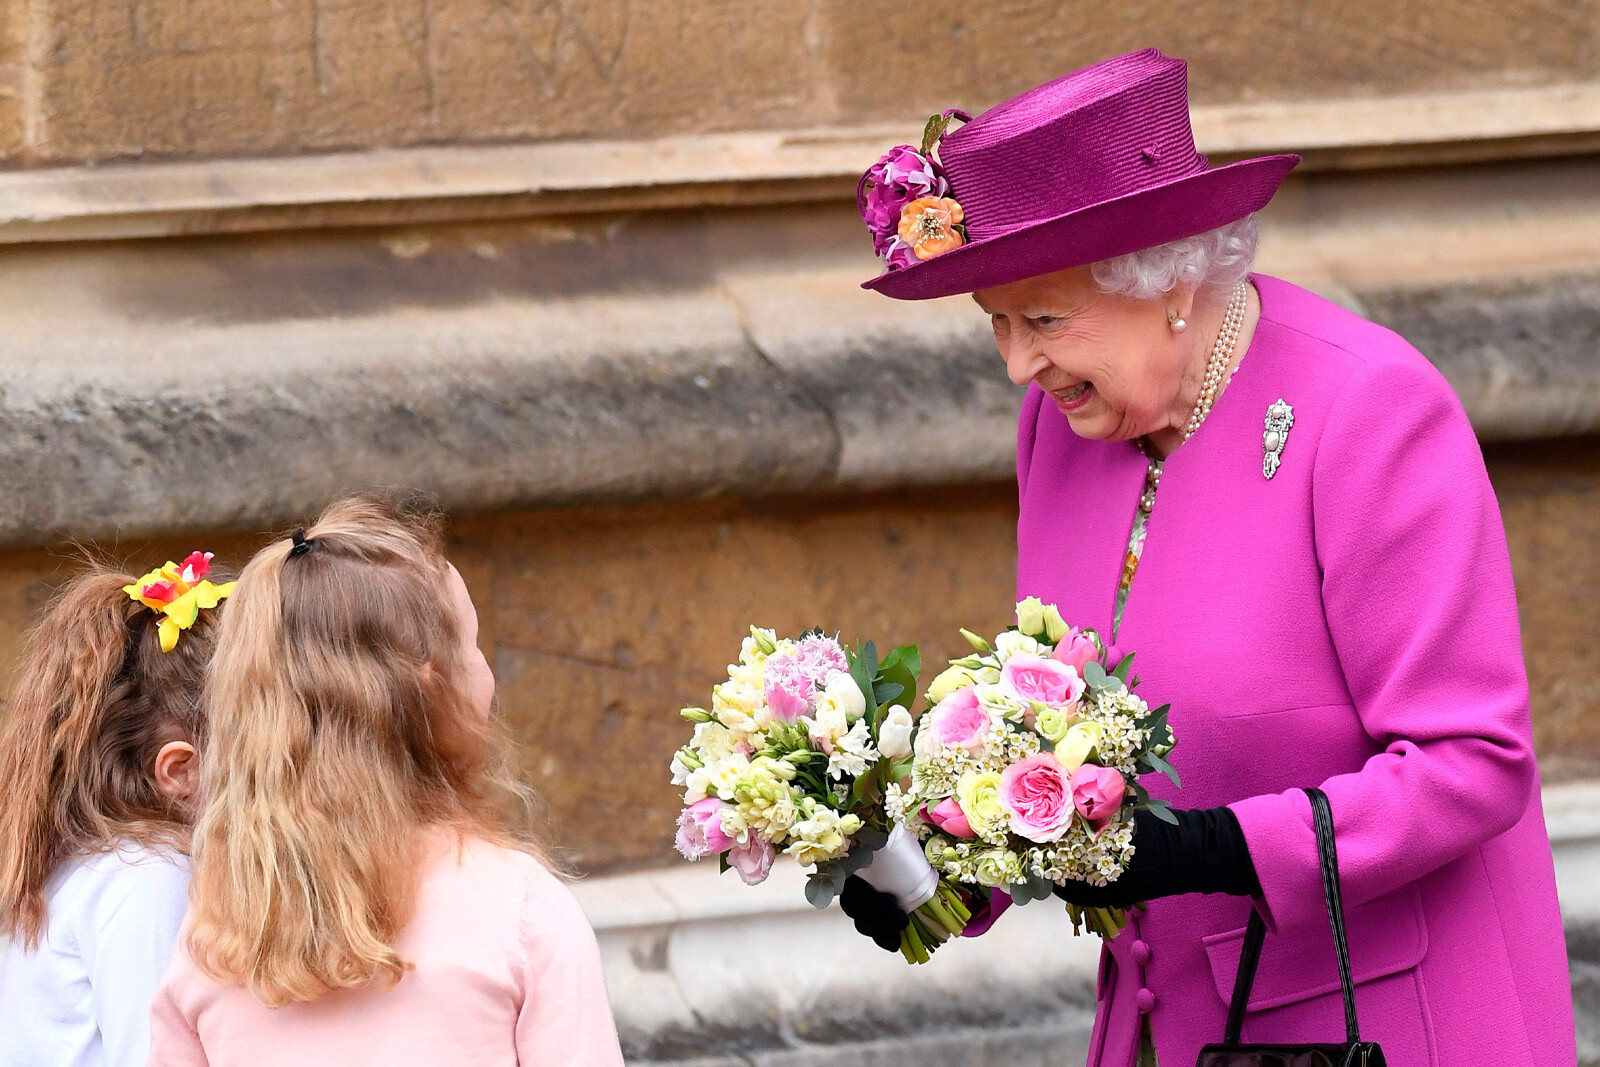 Елизавета II отбывает после посещения пасхальной службы в часовне Святого Георгия 1 апреля 2018 года в Виндзоре, Англия